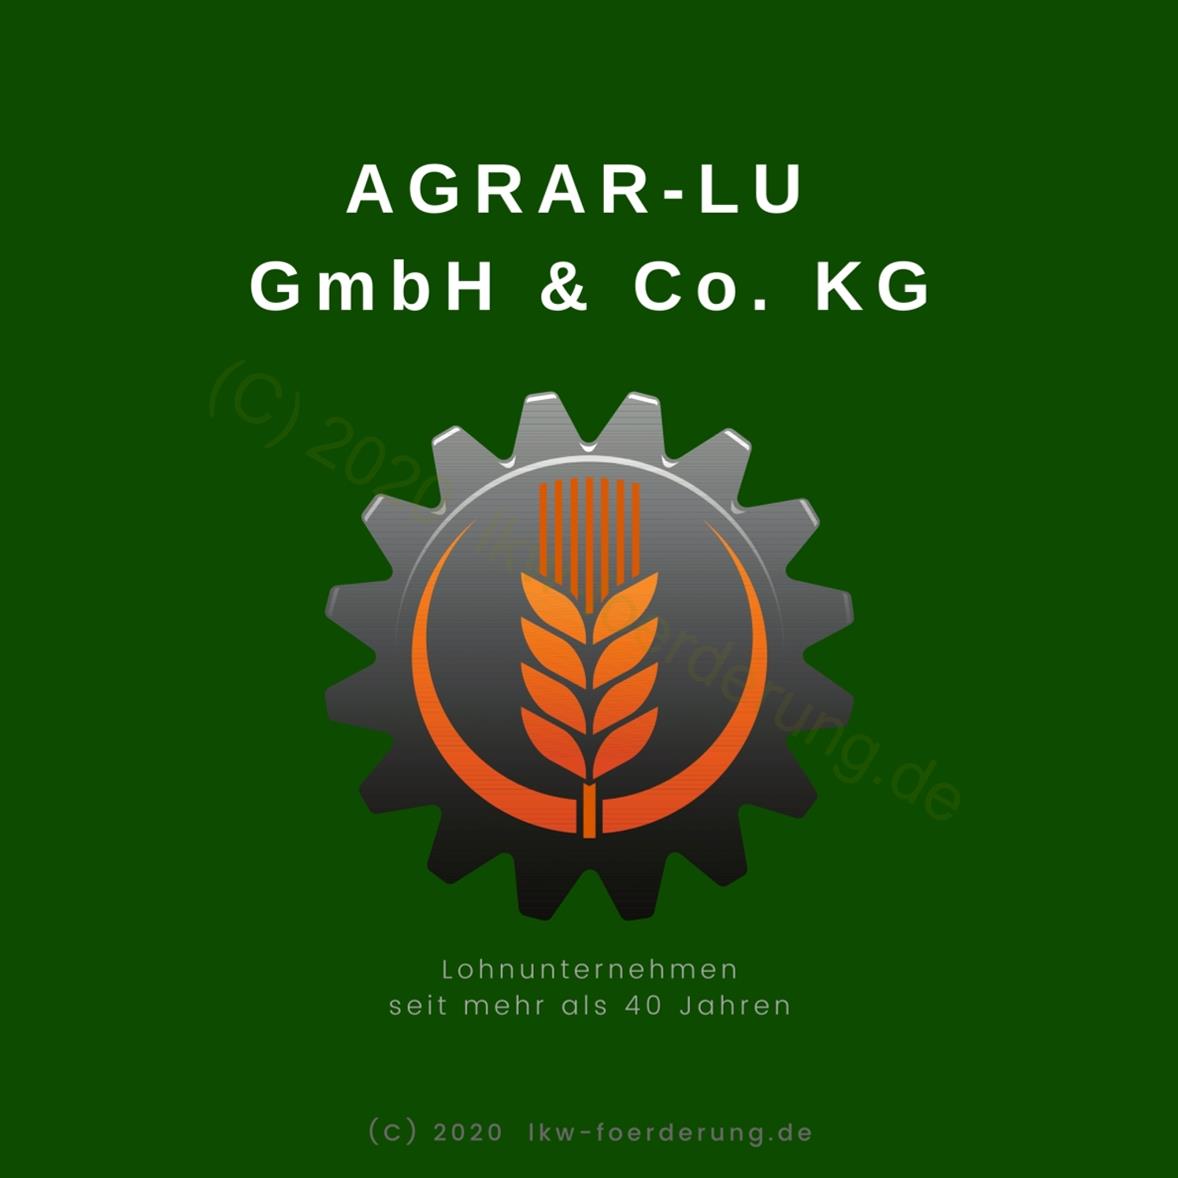 ausgangslage-agrar-lu-gmbh-&-co-kg-lohnunternehmen-seit-mehr-als-40-jahren